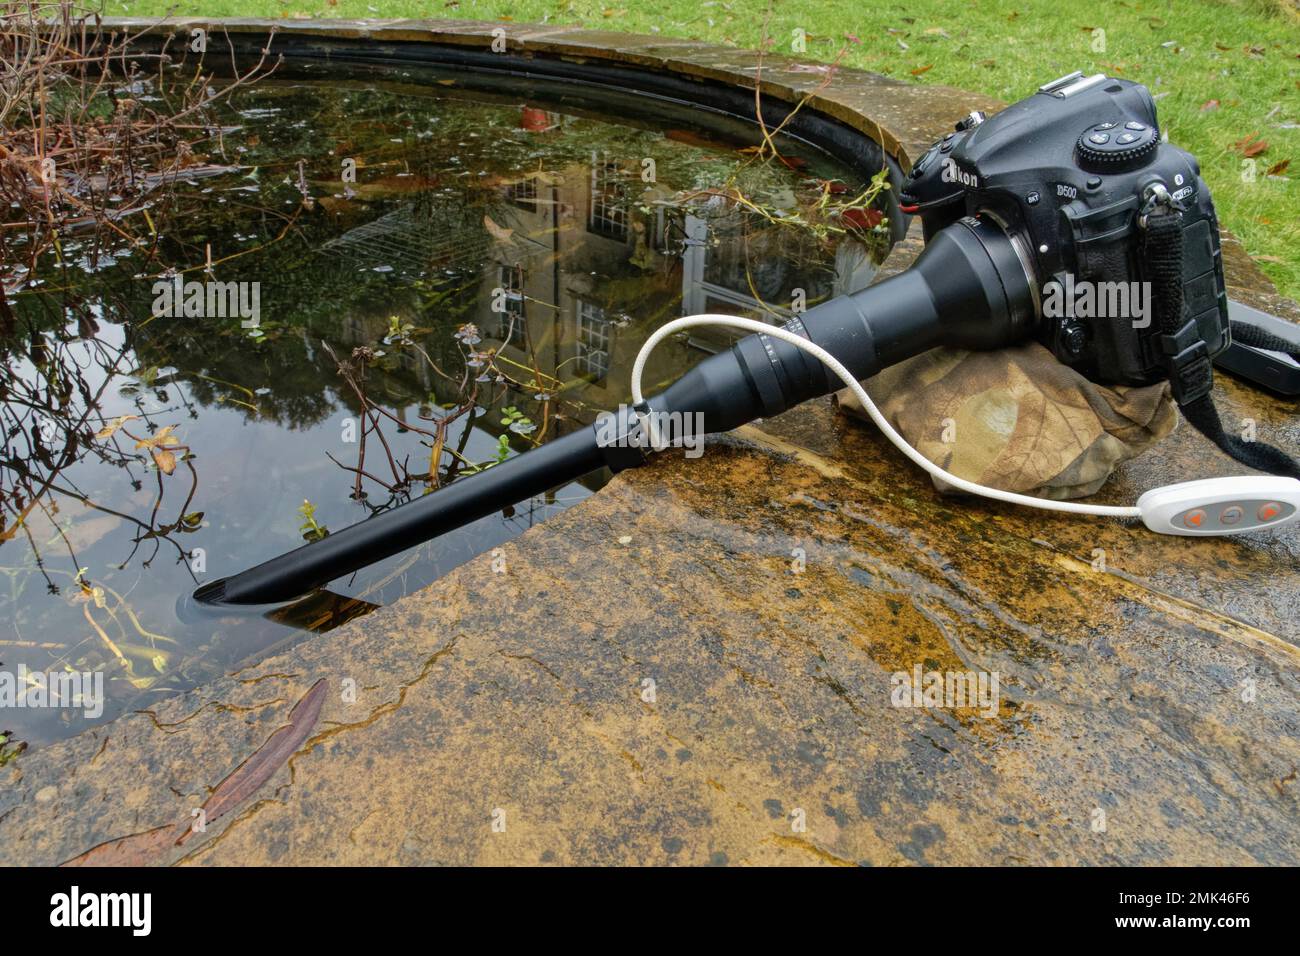 Makroobjektiv mit integrierter LED-Beleuchtung, montiert auf einer DSLR-Kamera und taucht unter Wasser, um das Leben im Garten zu fotografieren, Wiltshire, Großbritannien, Januar. Stockfoto